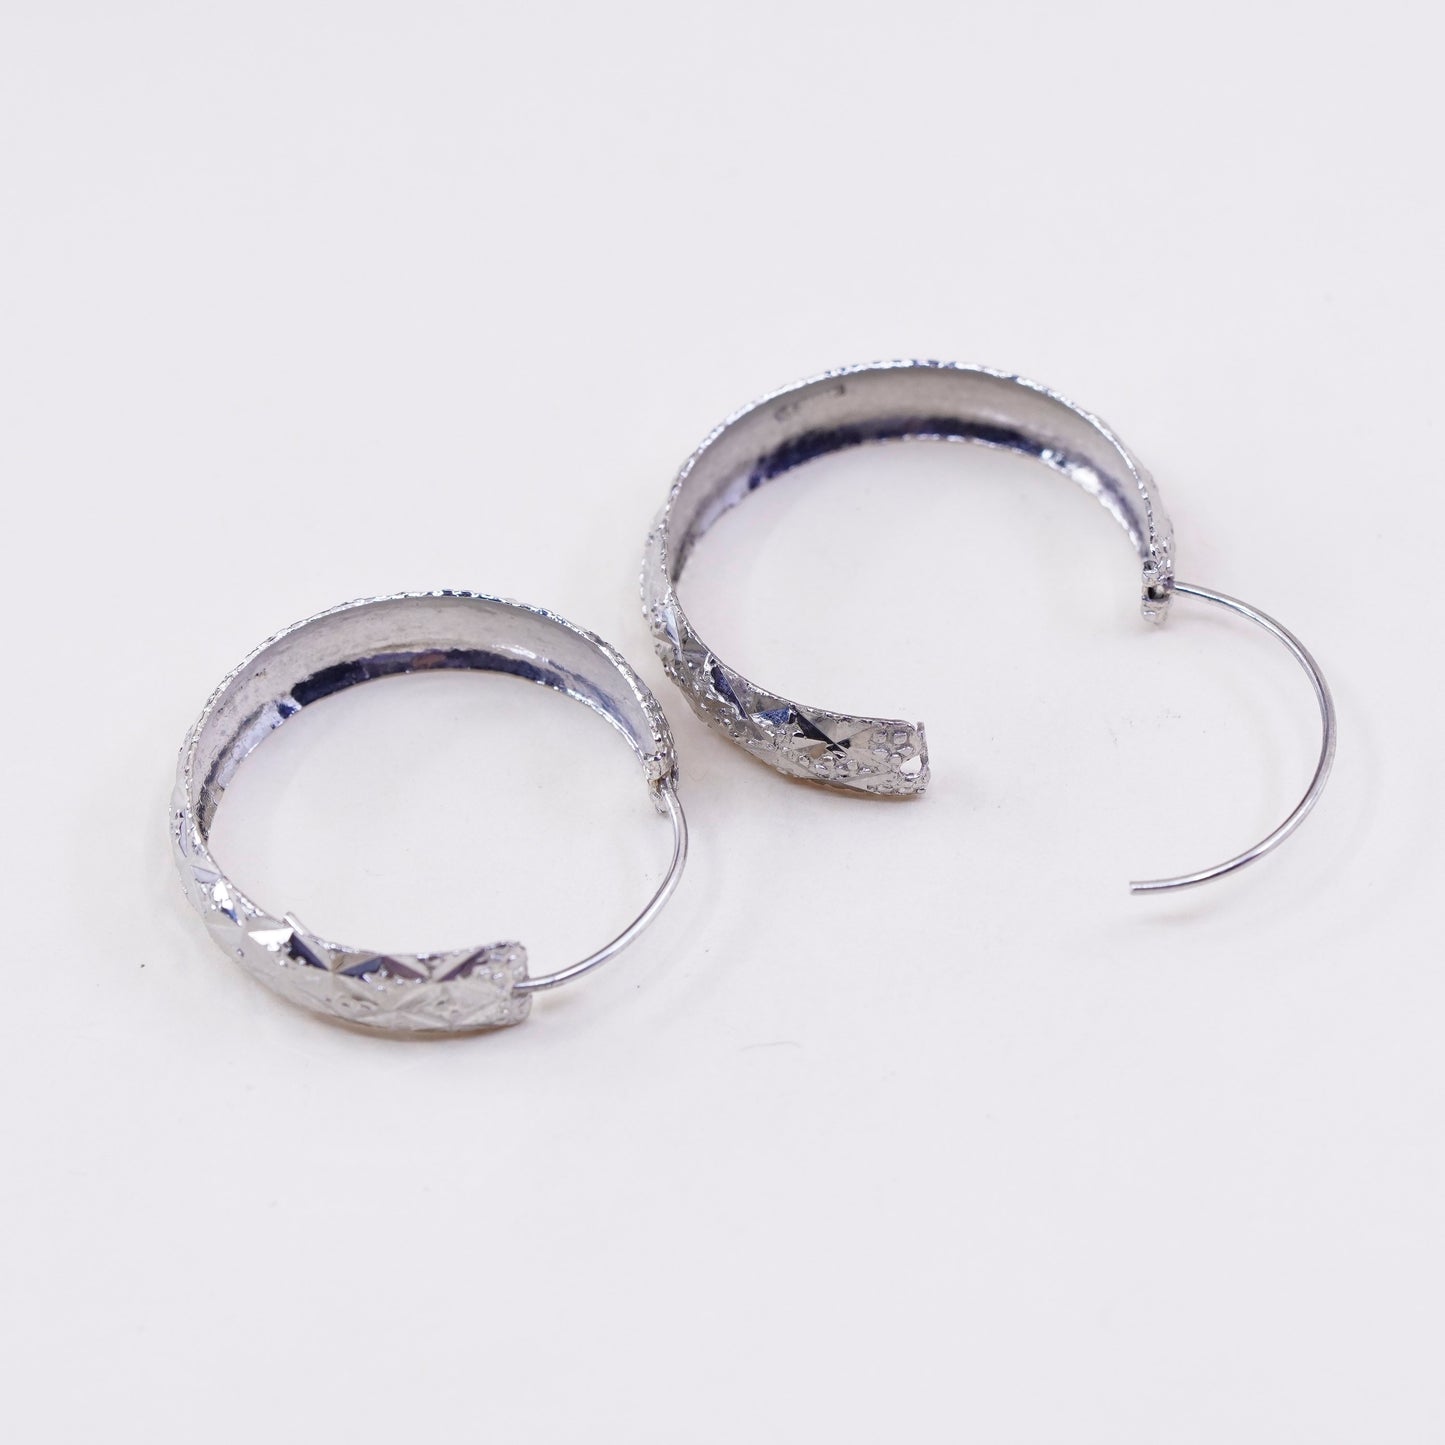 1.25”, Vintage sterling silver loop earrings, textured primitive hoops